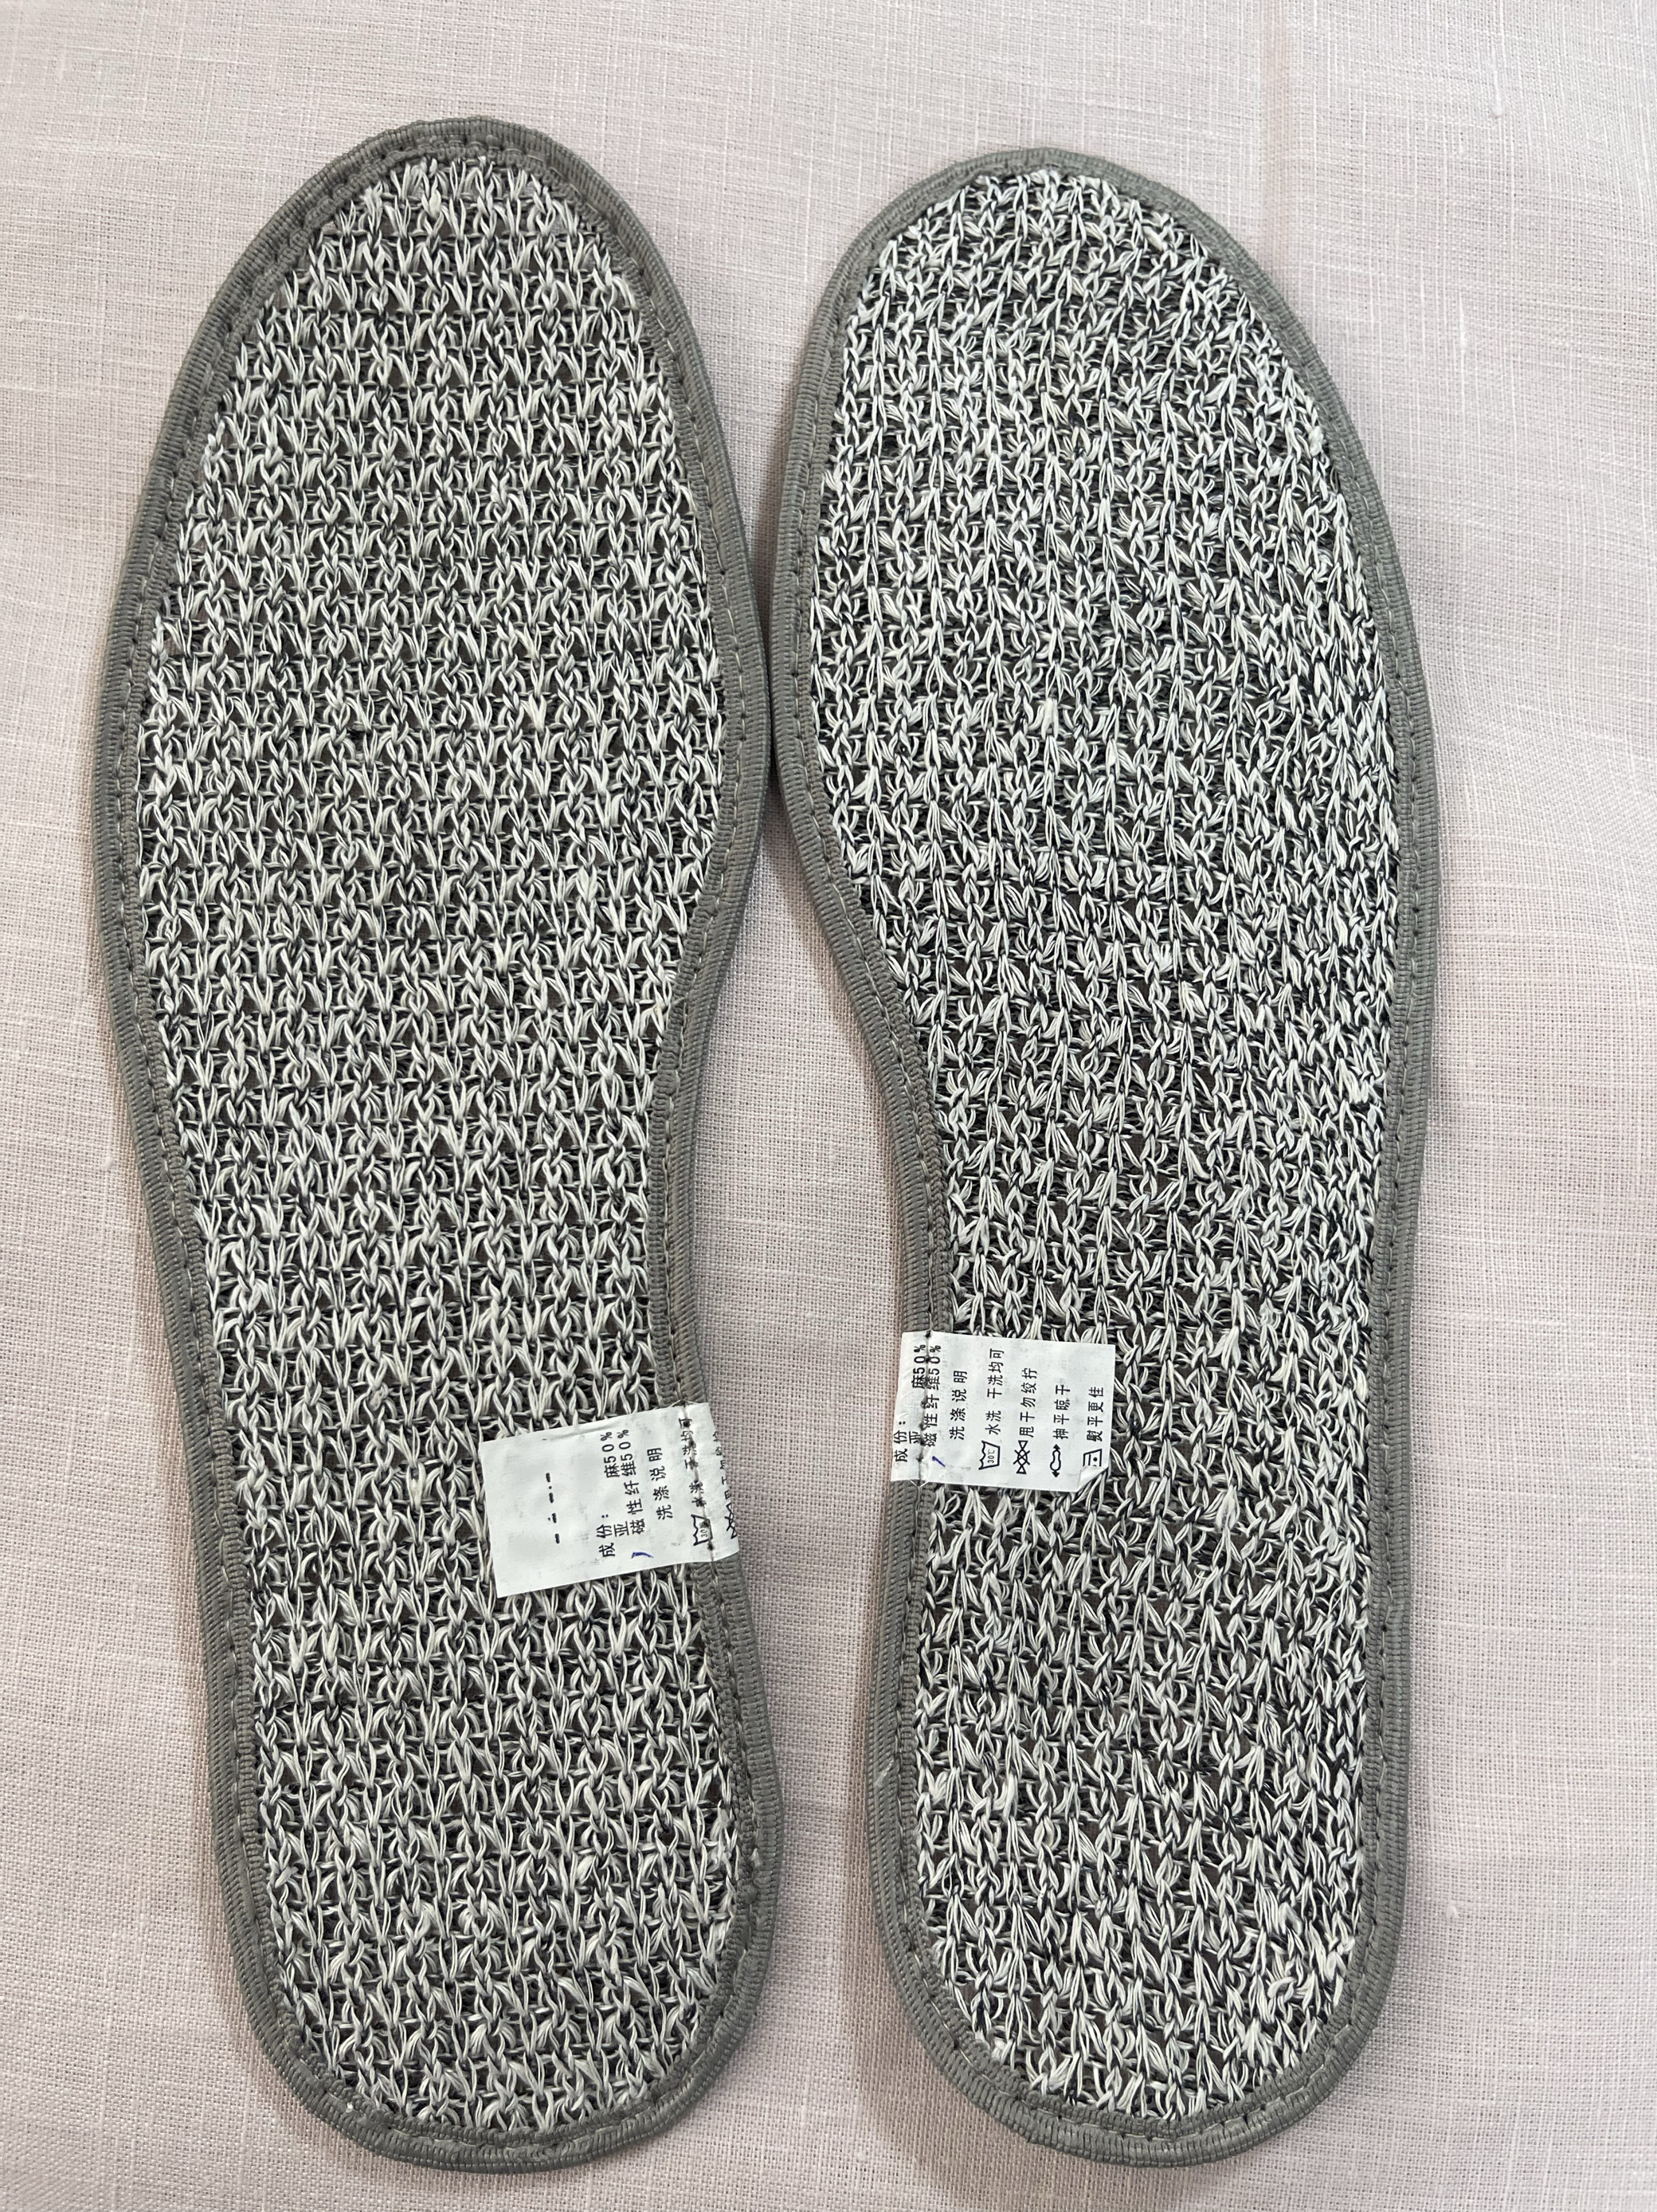 亚麻双层编织鞋垫50%亚麻纤维50%磁性纤维天然抑菌防脚臭35-46码